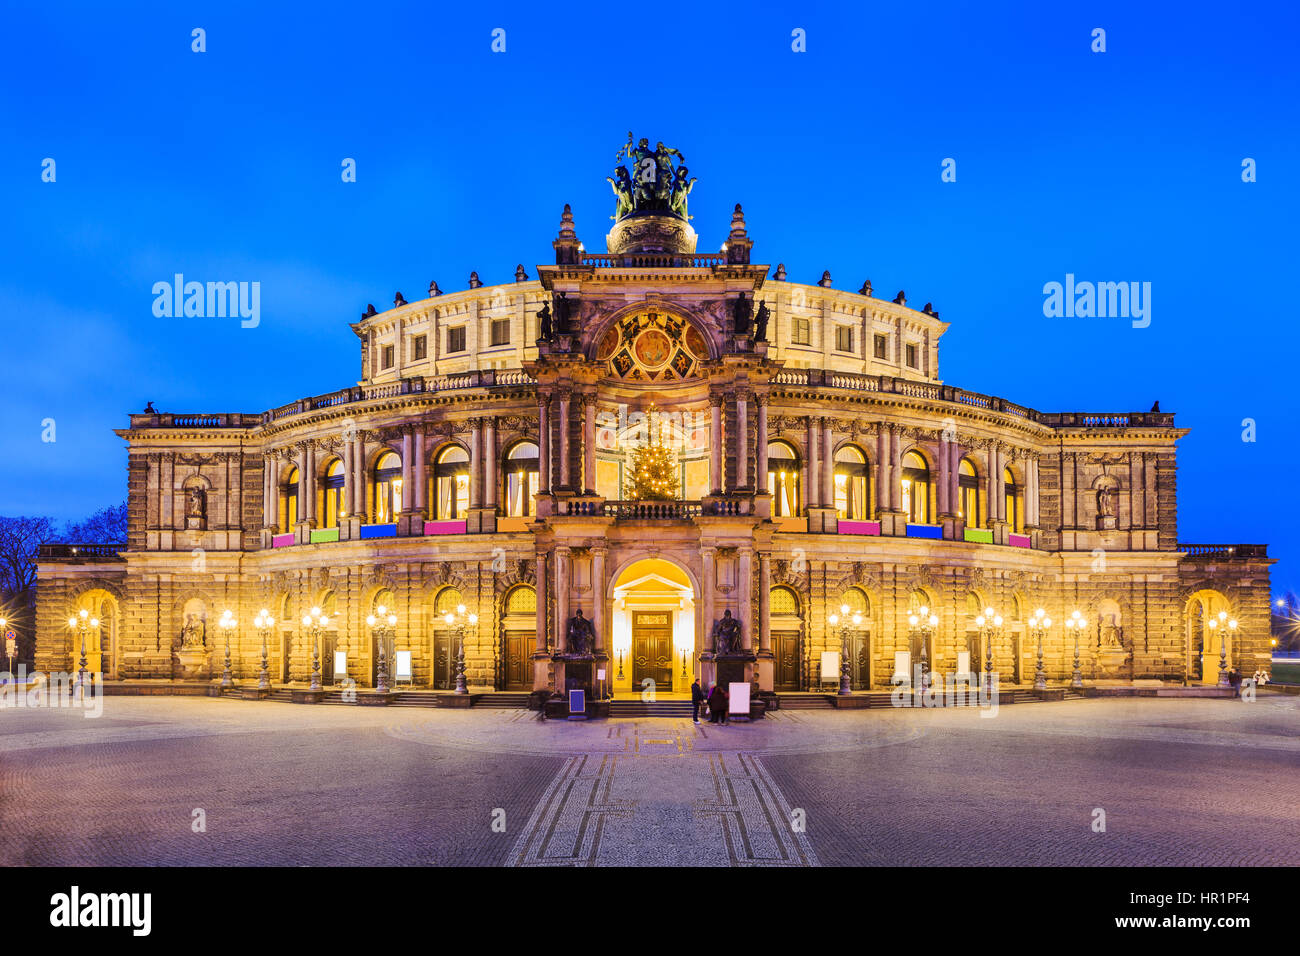 Dresde, Allemagne. L'opéra Semperoper - l'état de la Saxe. Banque D'Images